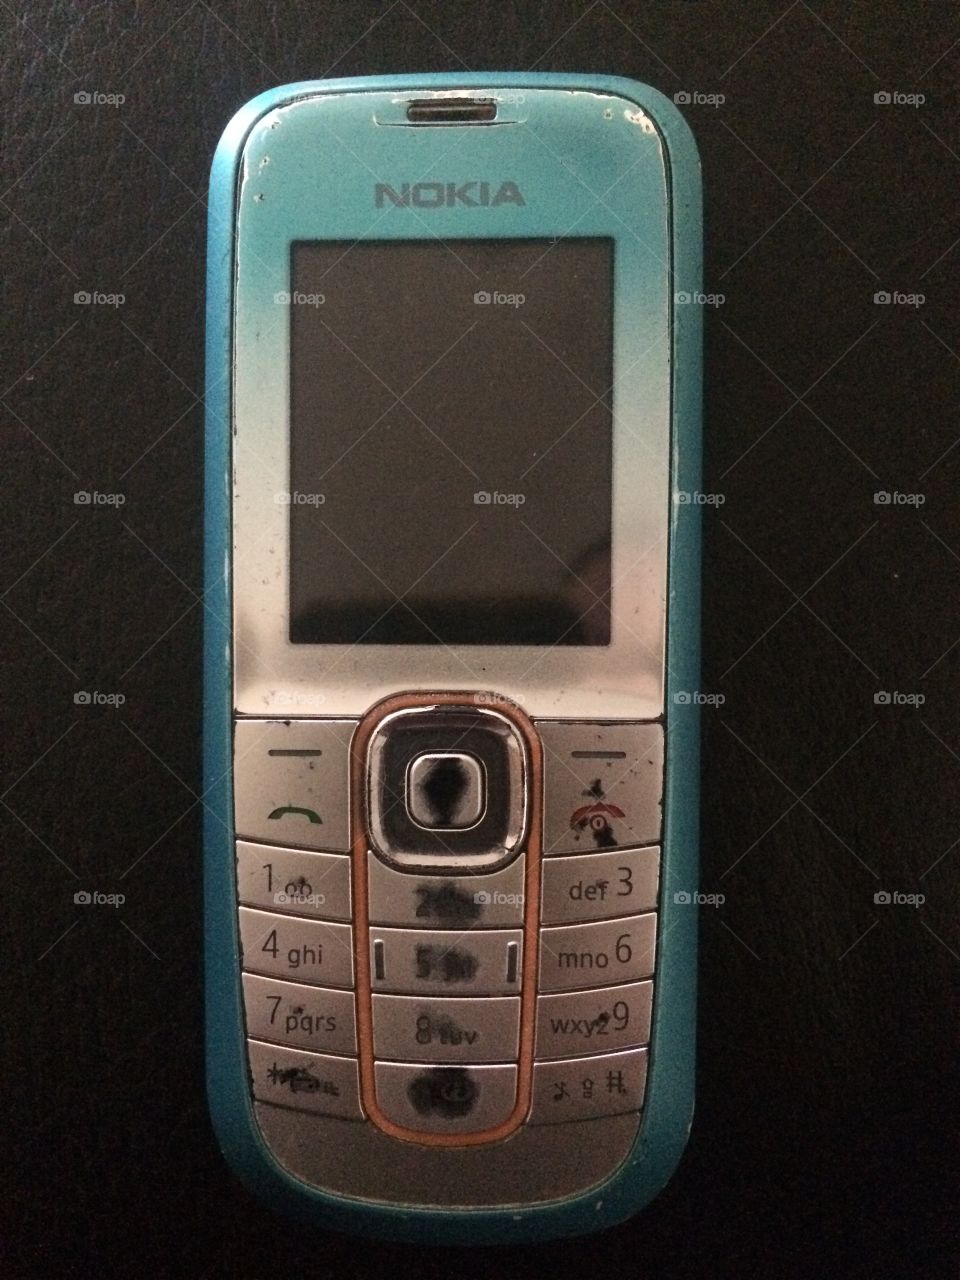 Nokia mobile 